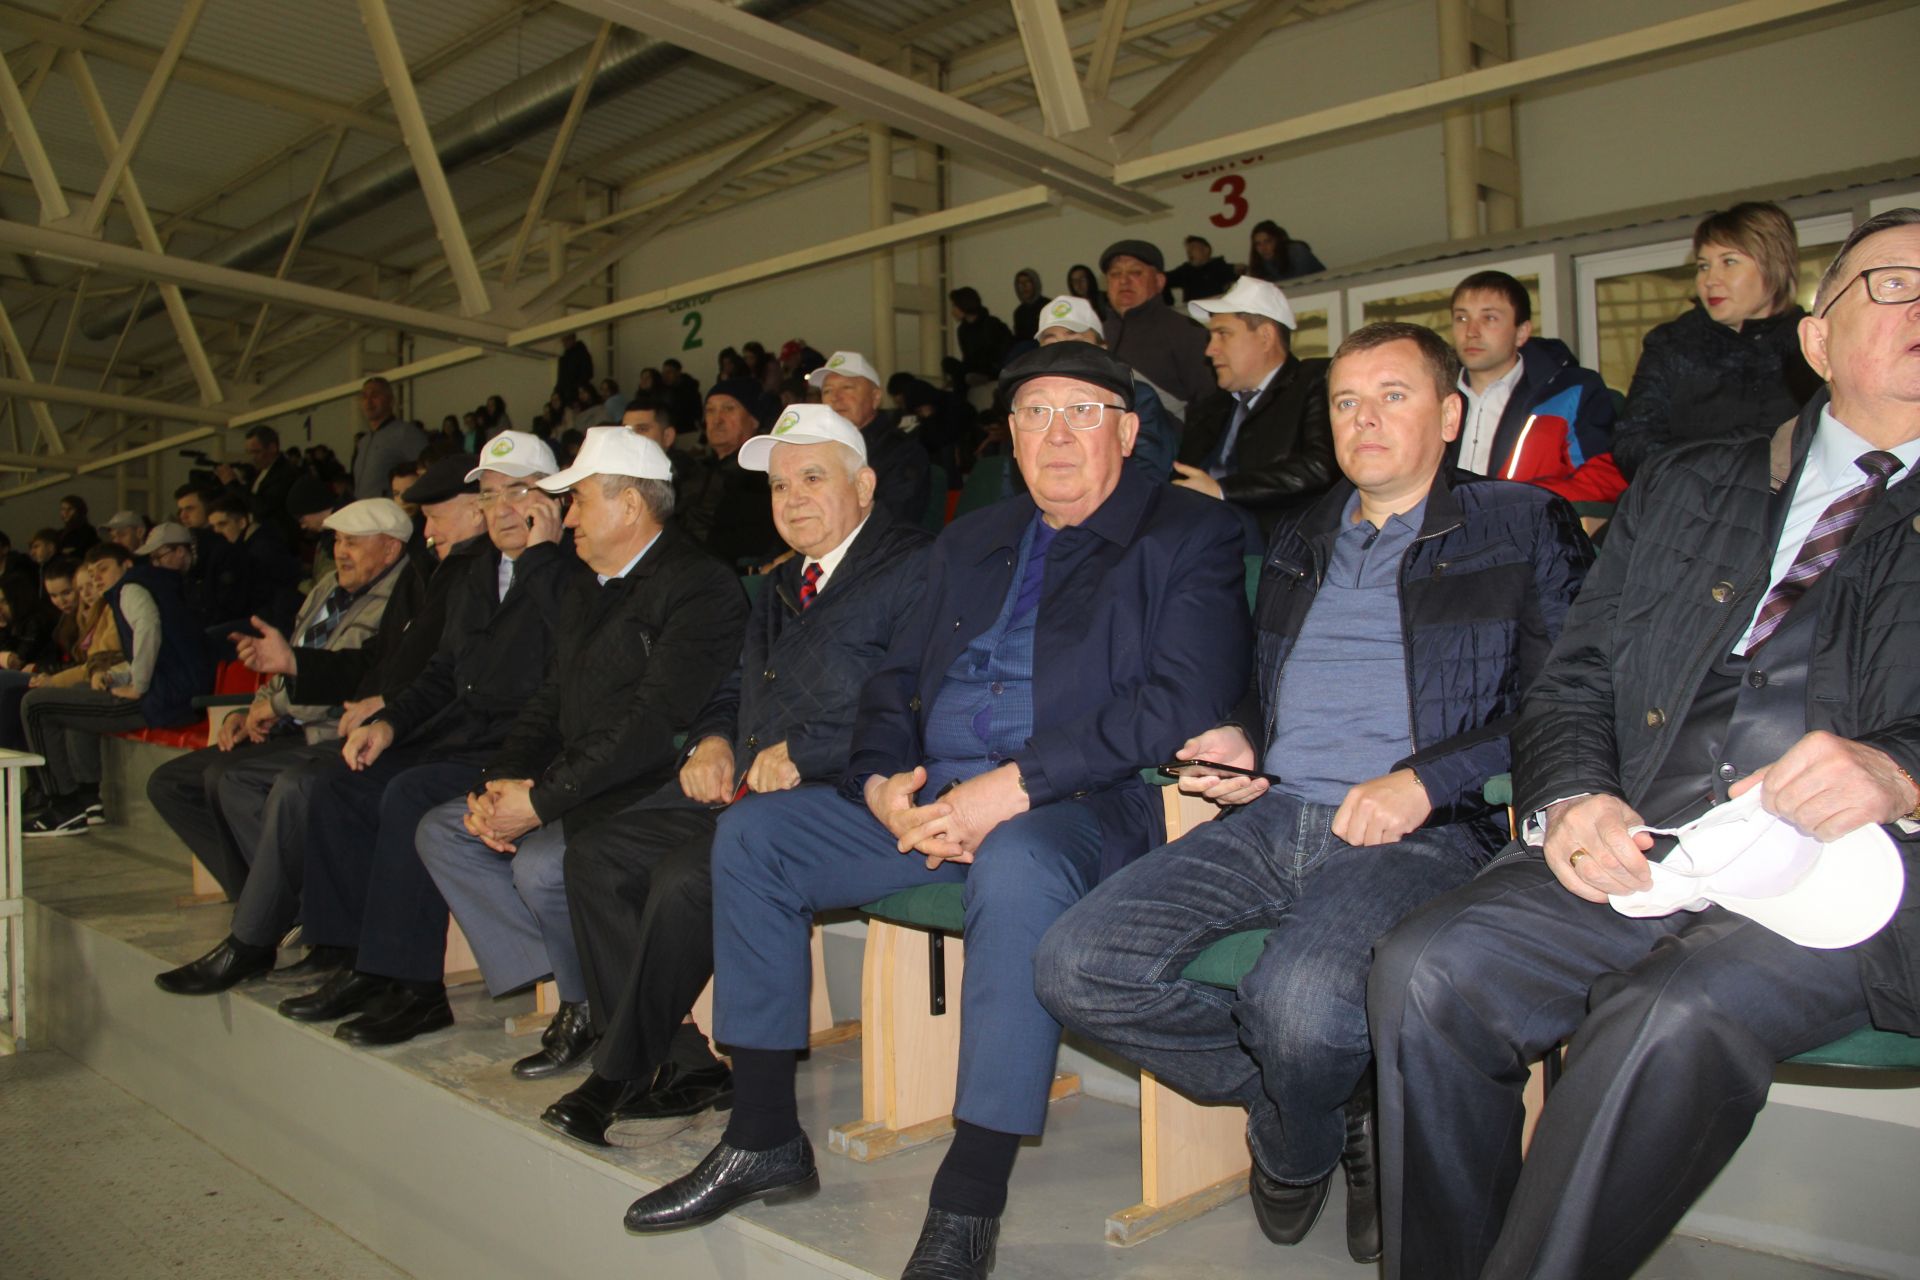 В Буинске состоялся турнир по хоккею памяти Камиля Зыятдинова (фоторепортаж)